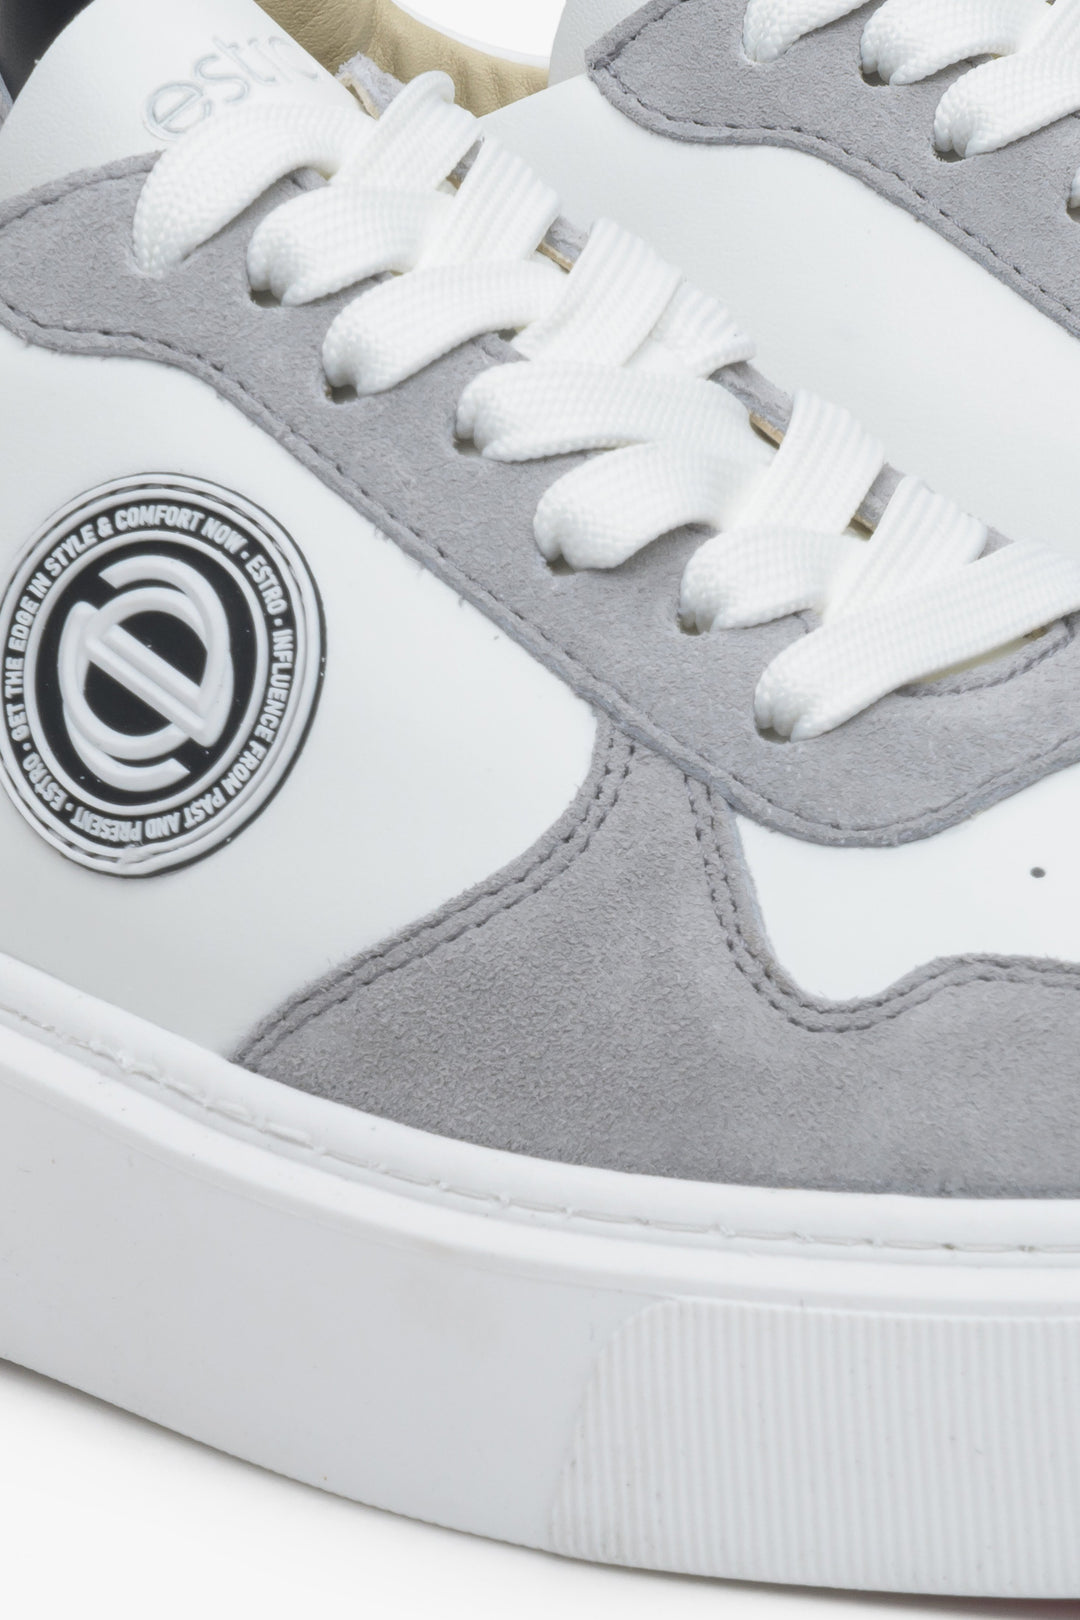 Sneakersy welurowo-skórzane Estro w kolorze biało-szarym. Zbliżenie na ozdobne logo.